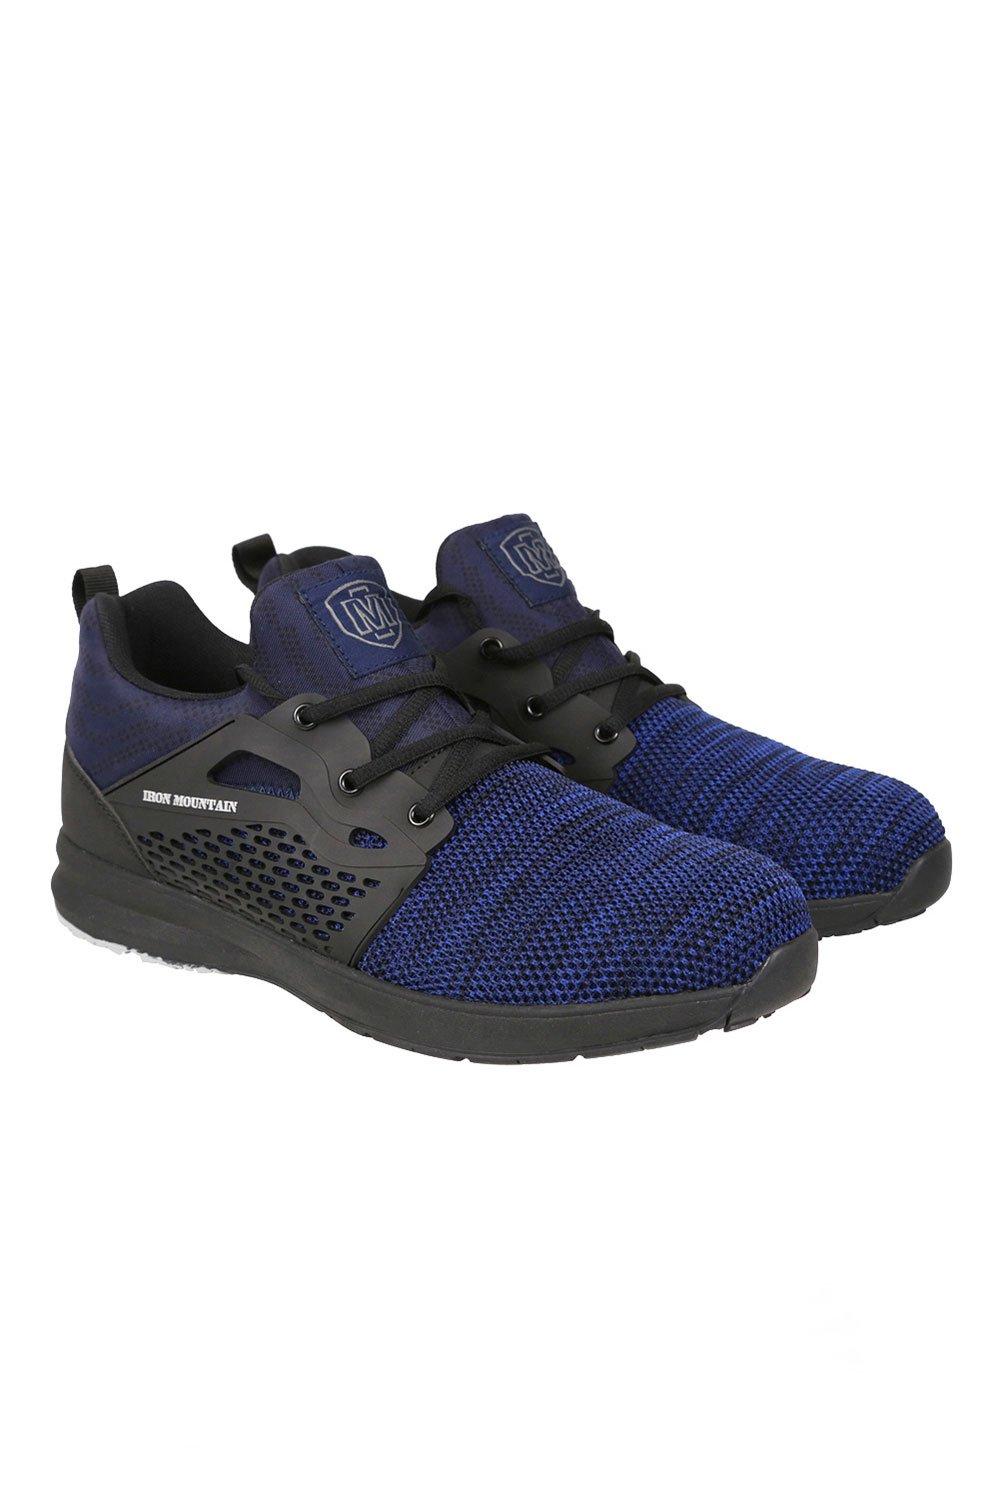 Спортивная защитная обувь со стальным носком S1P SRA HRO Iron Mountain, синий